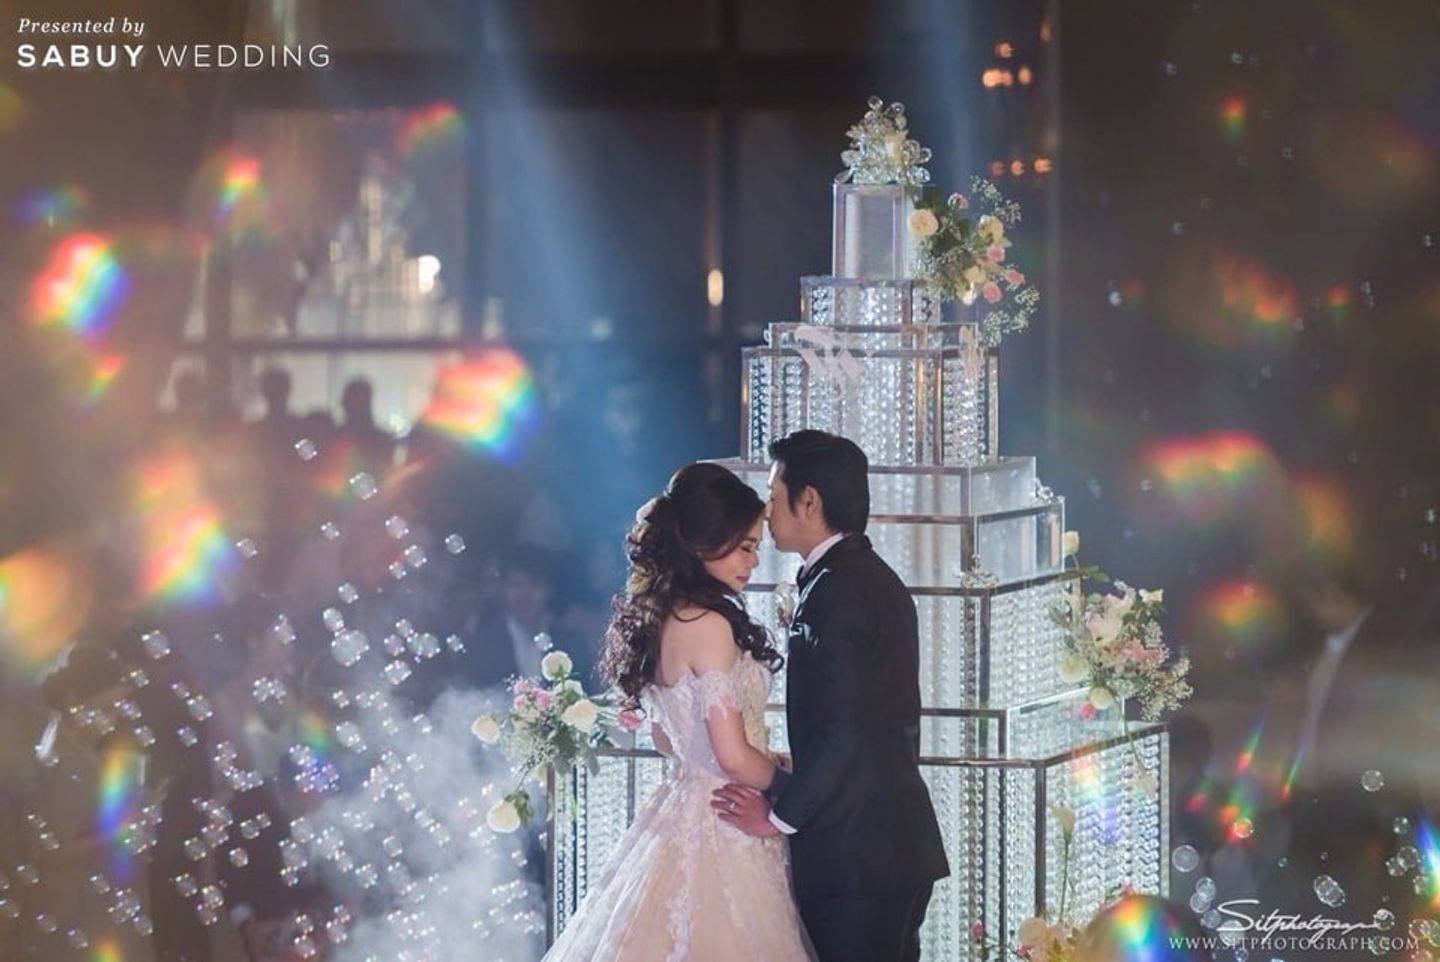 บ่าวสาว,ชุดบ่าวสาว,งานแต่งงาน รีวิวงานแต่ง 4 มิติยุคใหม่ ส่งผ่านความรู้สึก ครบทุกประสาทสัมผัส @Plaza Athénée Bangkok